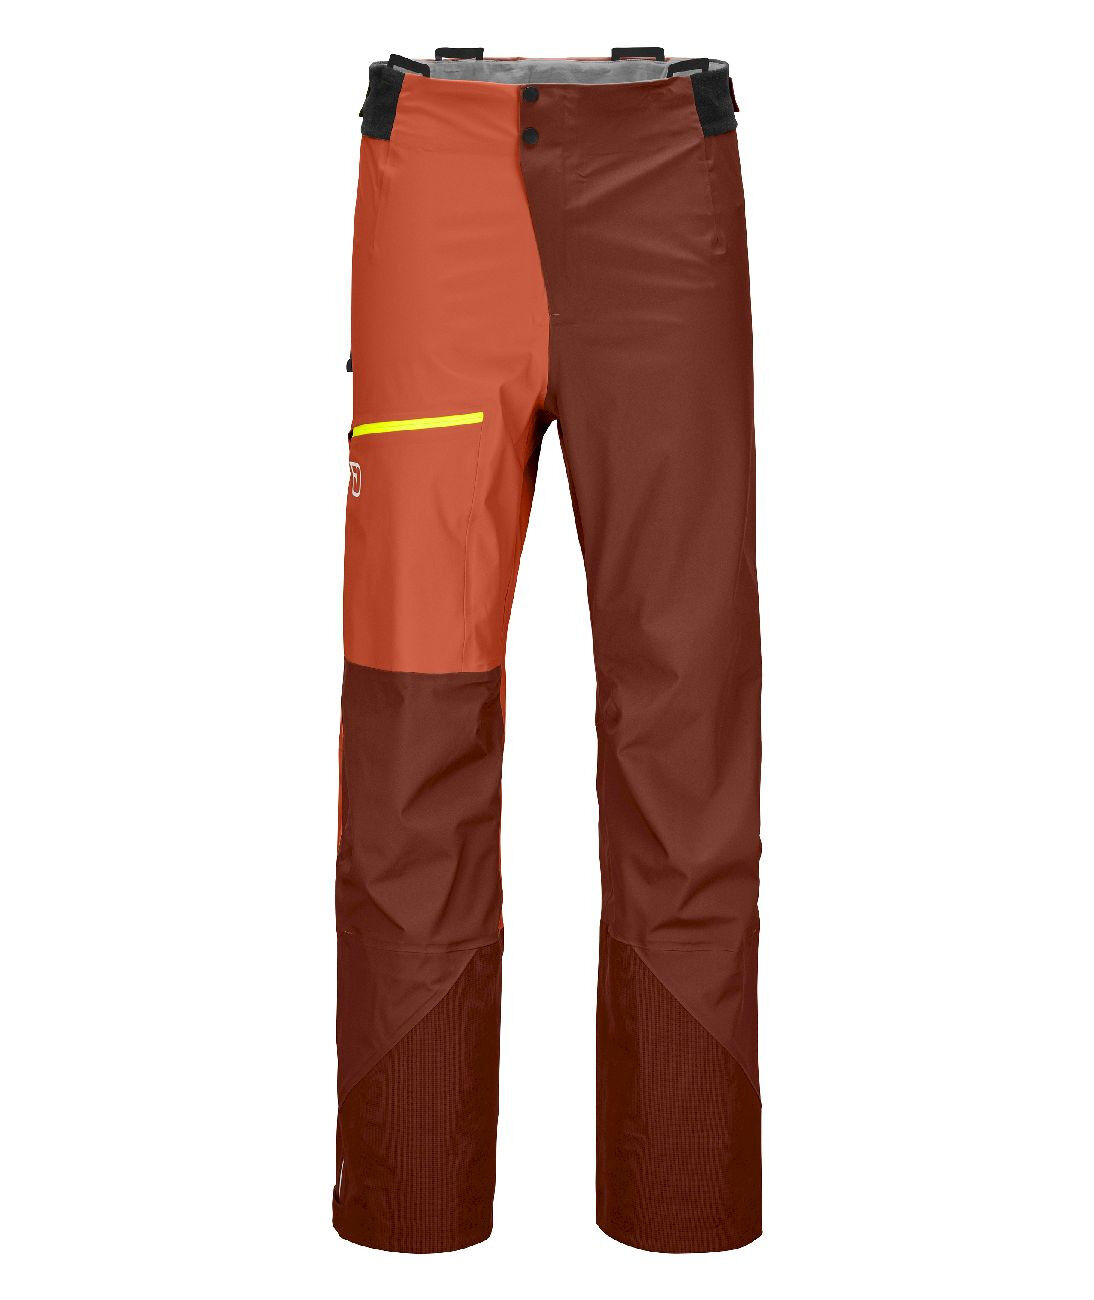 Ortovox 3L Ortler Pants - Regenhose - Herren